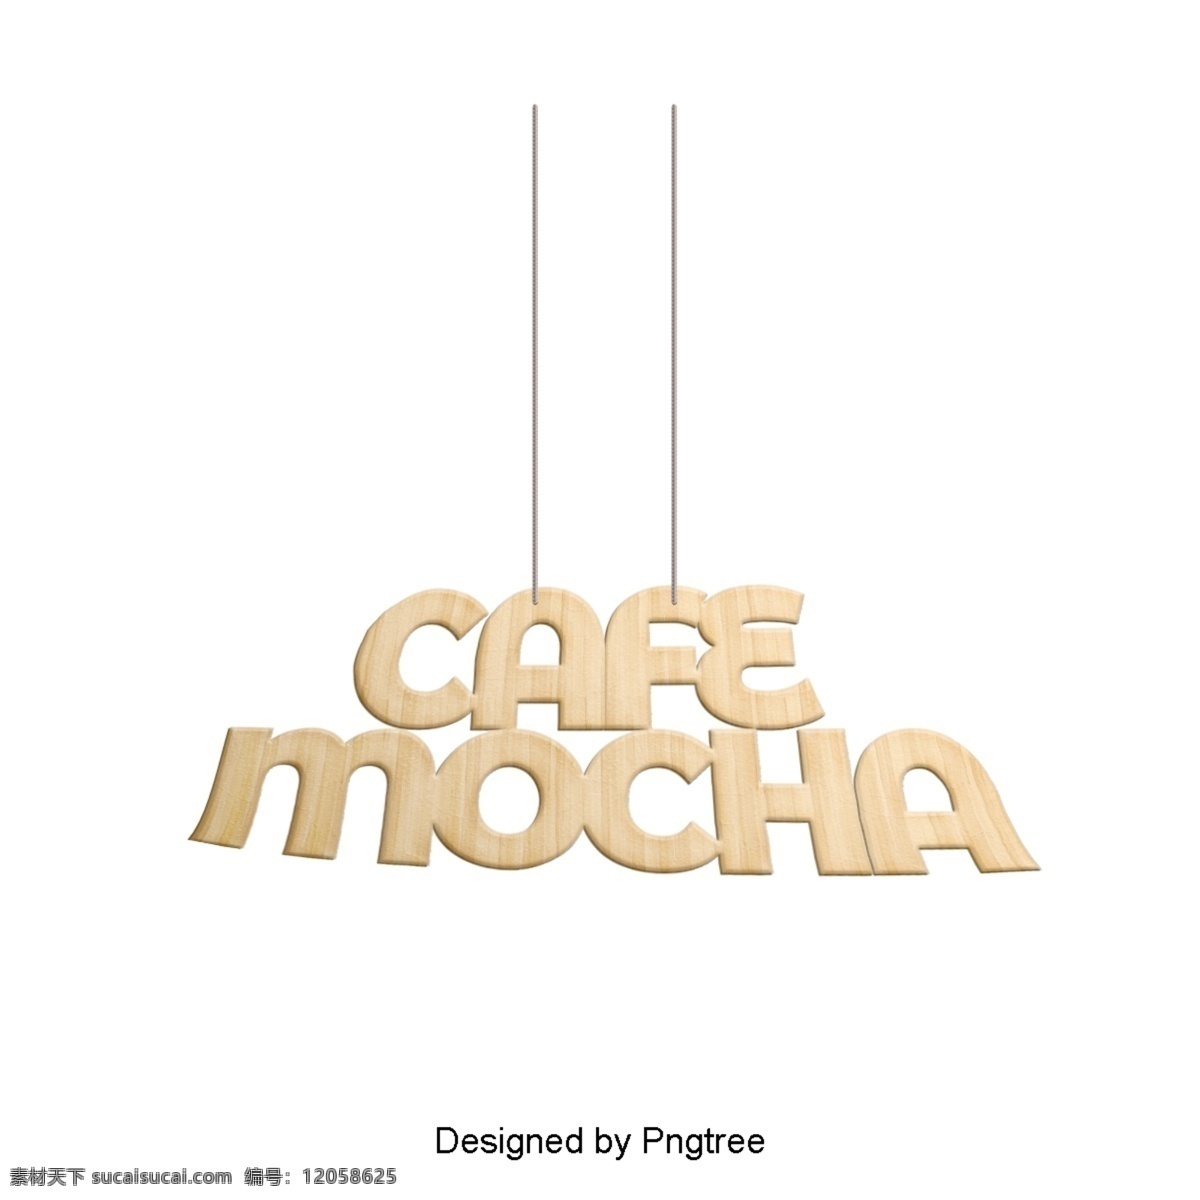 3d 木 咖啡馆 上等 咖啡 字体 绳索 垂 悬 咖啡店 咖啡馆摩卡 摩卡 3d字体 吊绳 绳 木制字体 创作的 简单 近代